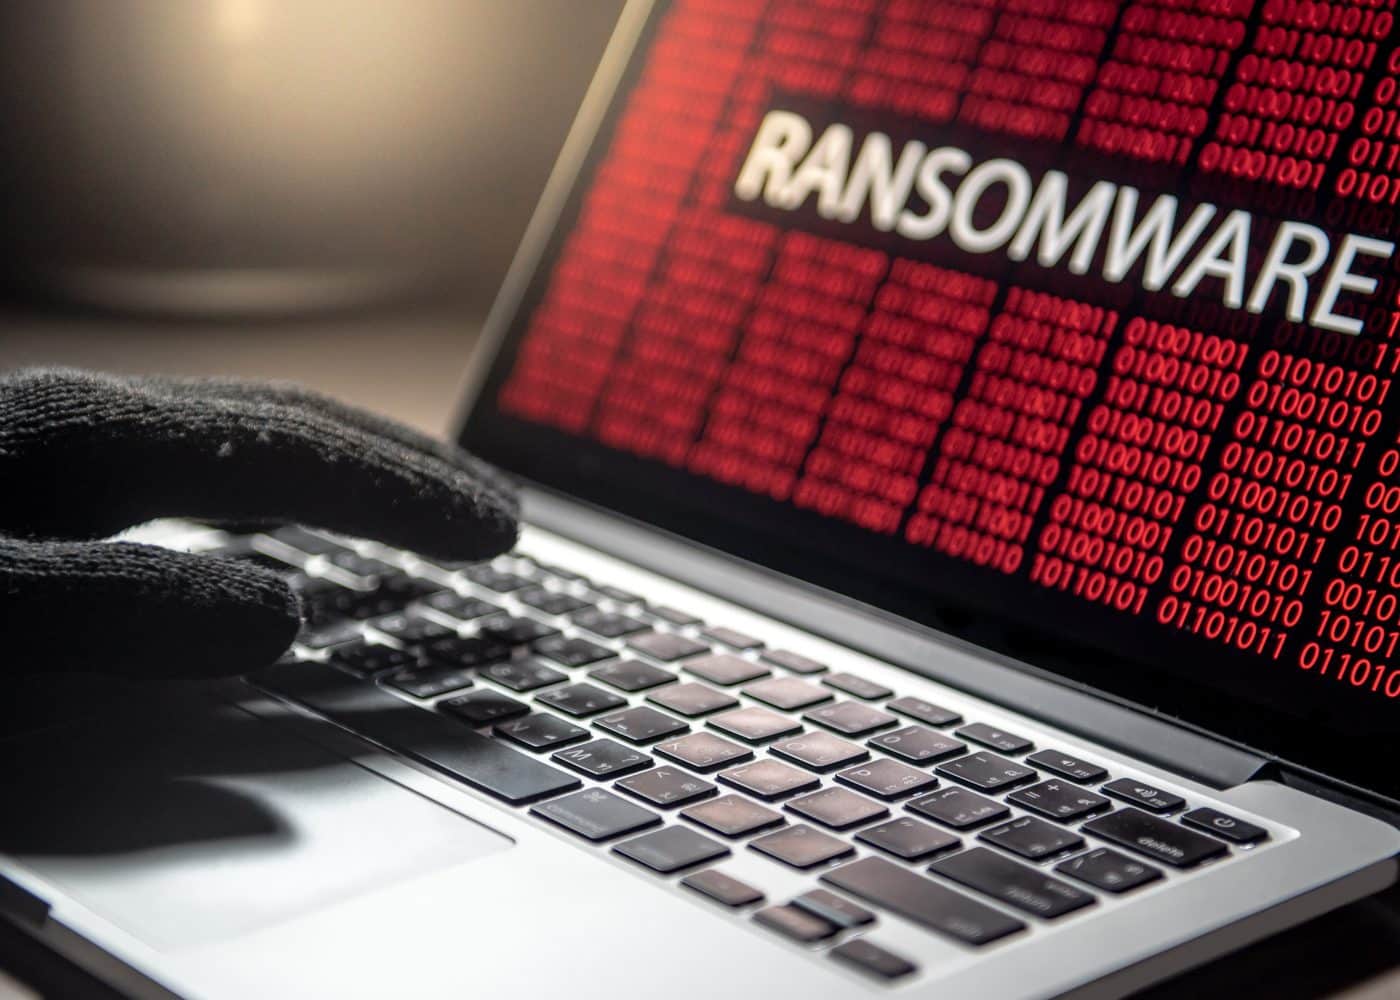 ataque-cibernetico-ransomware